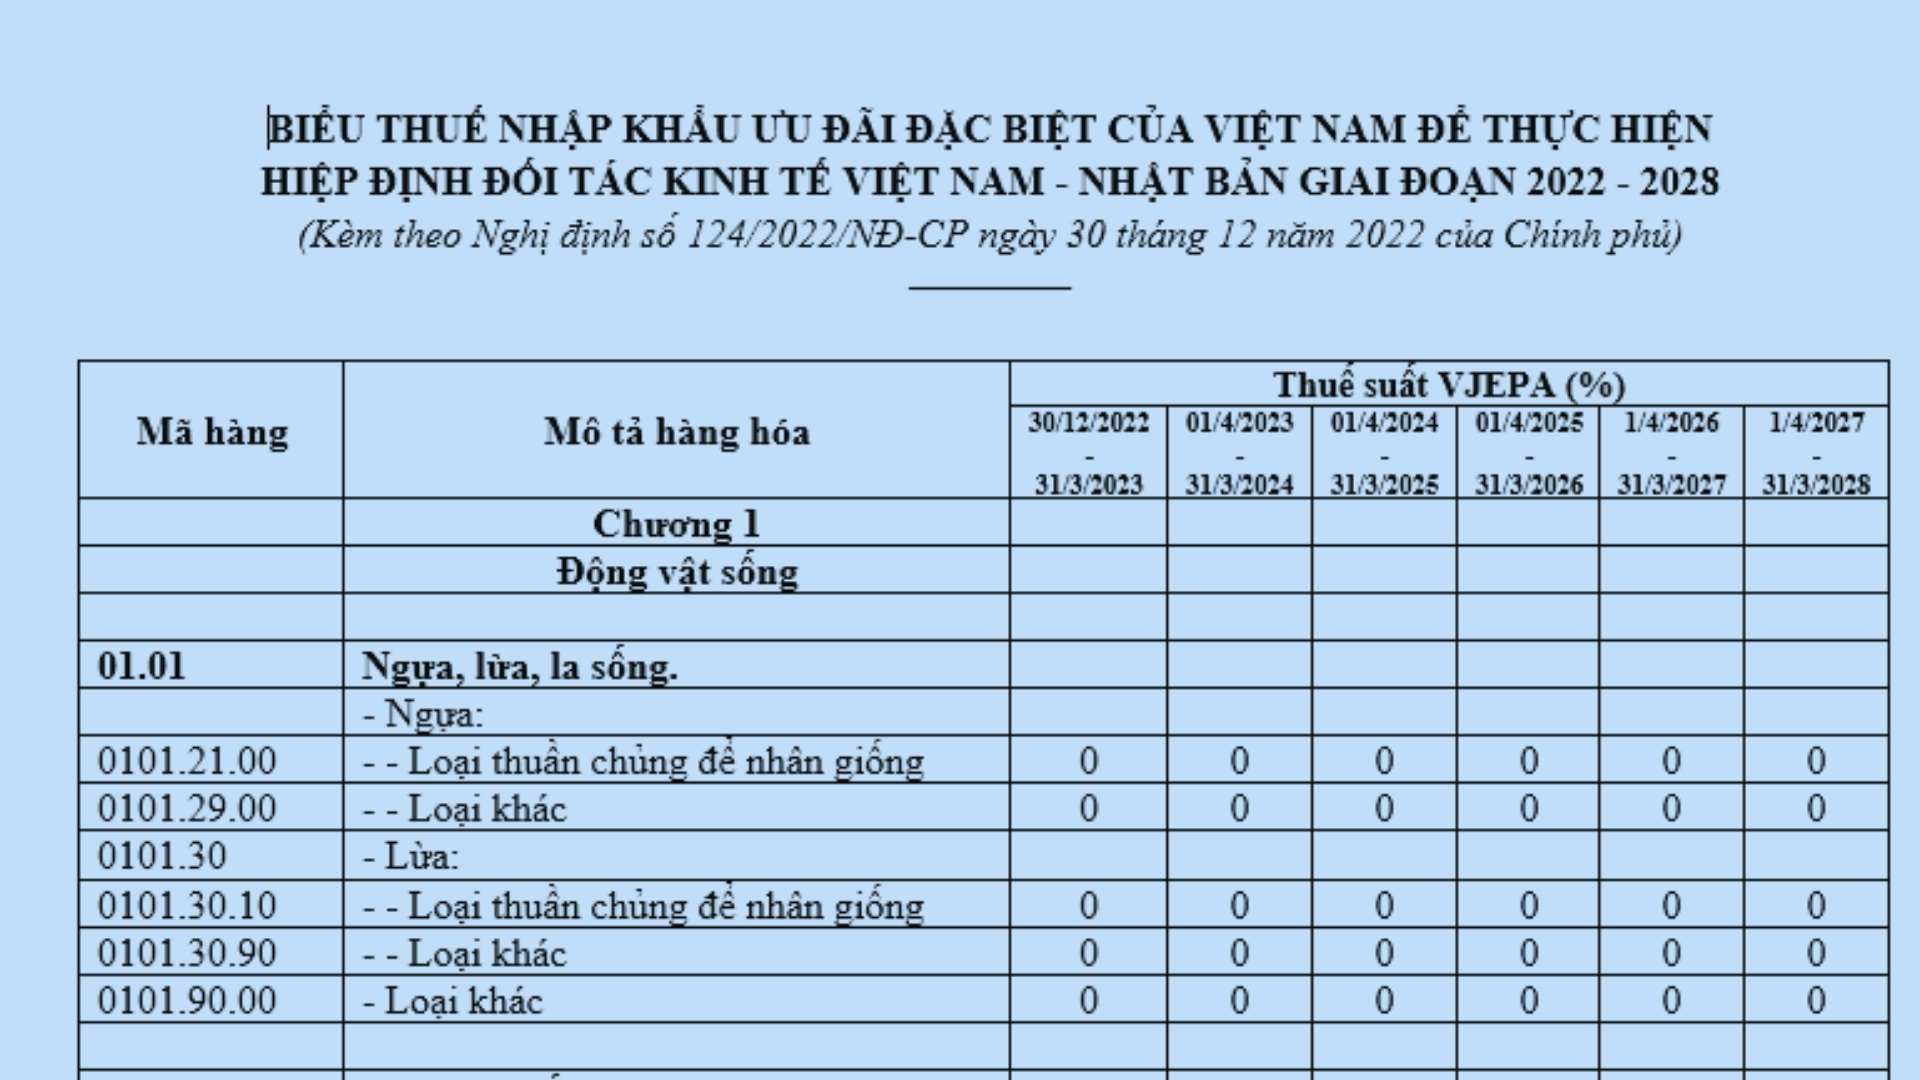 Biểu thuế nhập khẩu ưu đãi đặc biệt Việt Nam Nhật Bản